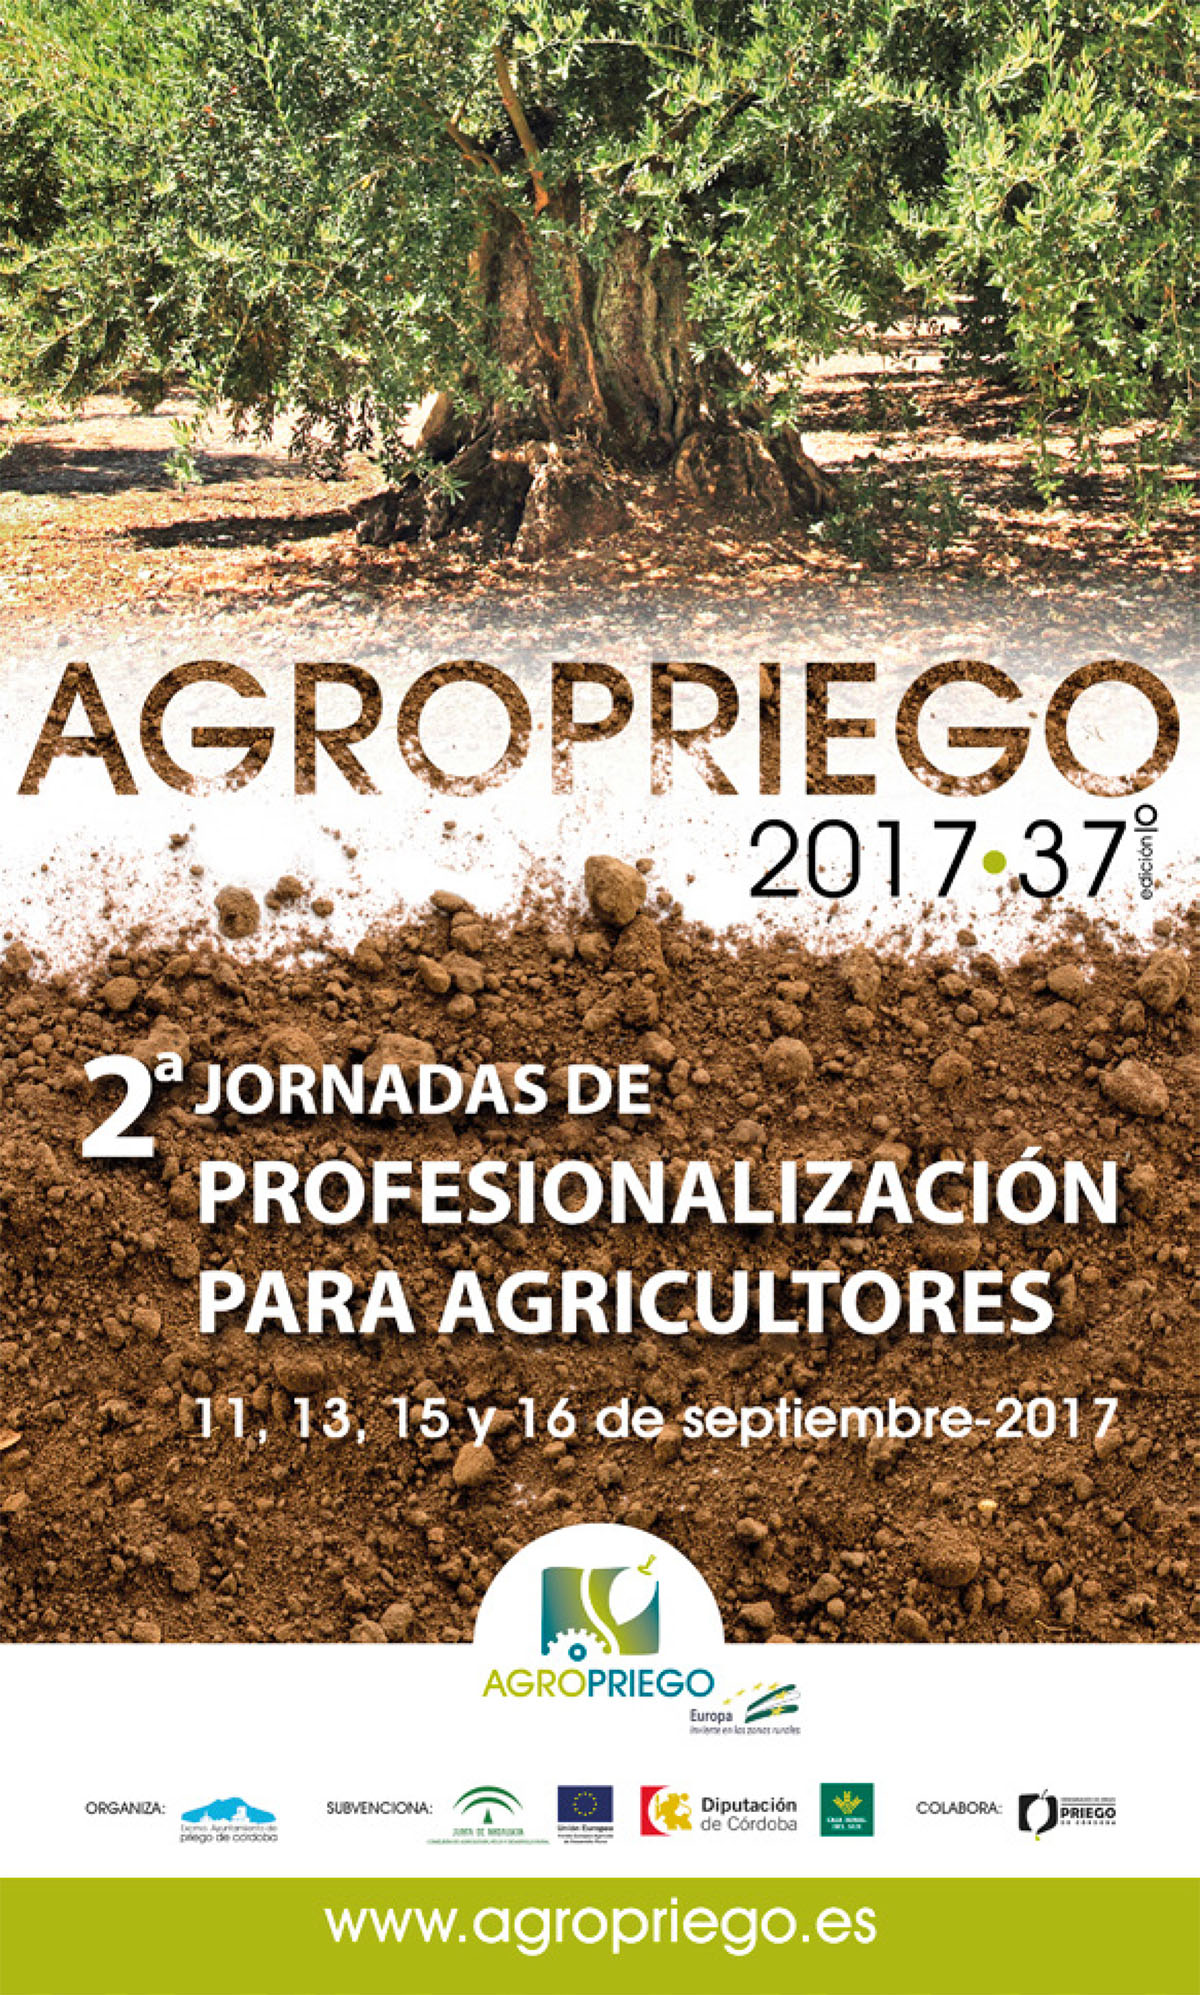 2ª JORNADAS DE PROFESIONALIZACIÓN PARA AGRICULTORES. DIAS 11, 13, 15 Y 16 DE SEPTIEMBRE DE 2017. AGROPRIEGO 1